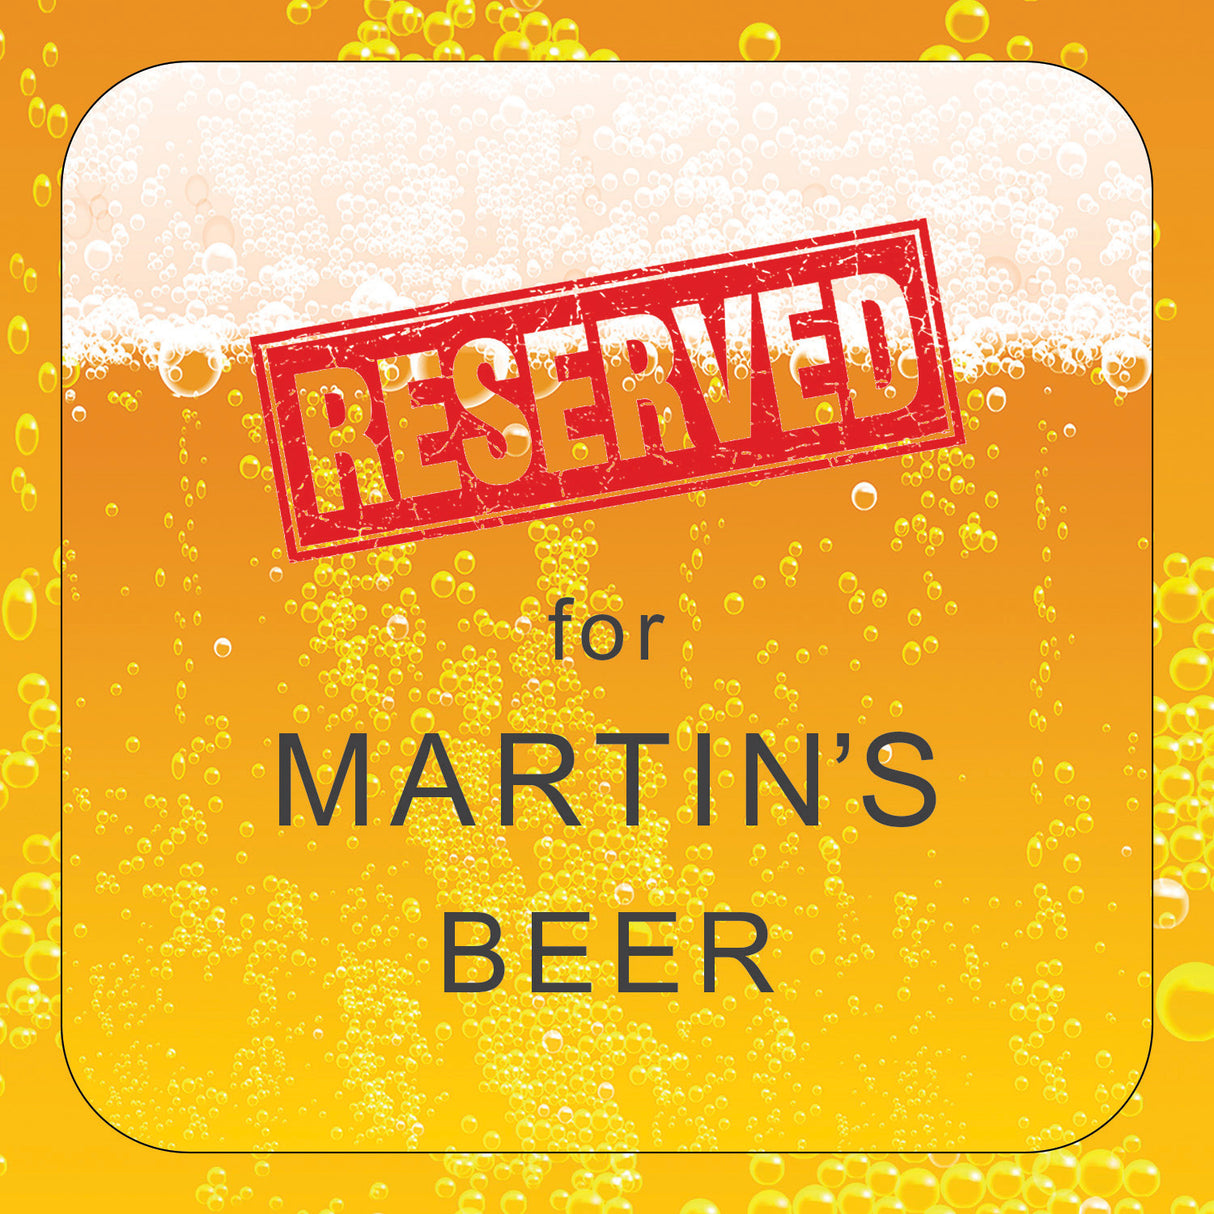 Personalised Reserved Beer Coaster Card